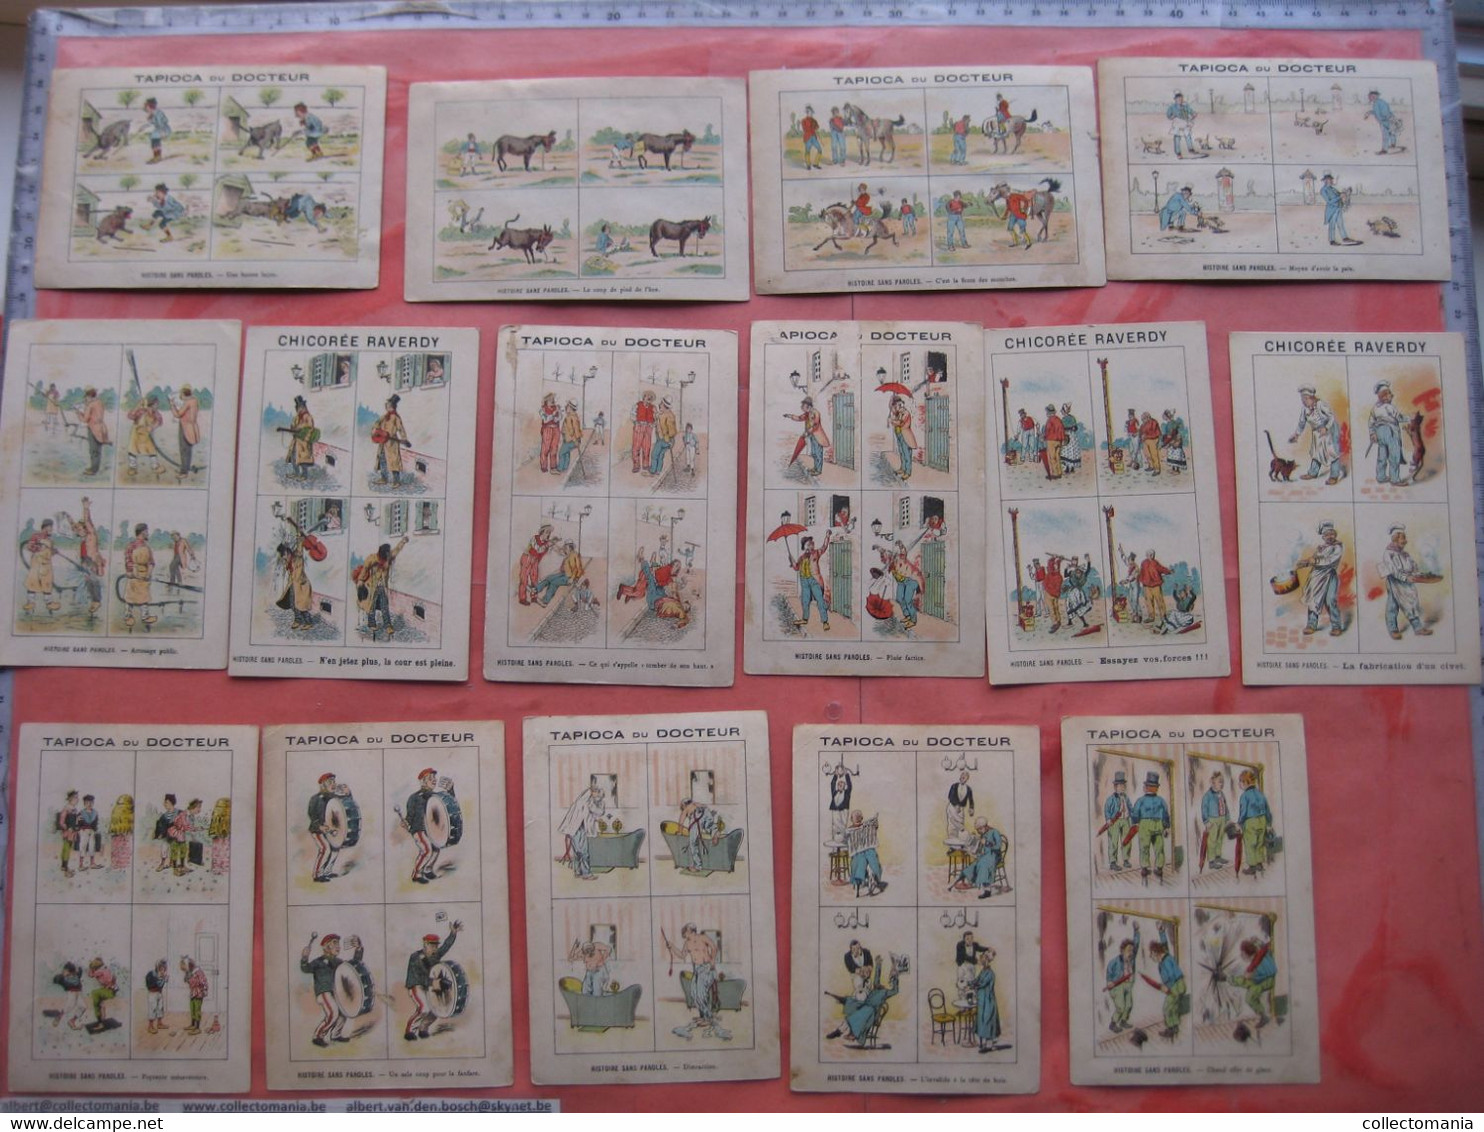 19 cartes chromos  bandes dessinés avant l'invention  c1890,  publicitaires Tapioca; imprimeur COURBE ROUZET humor